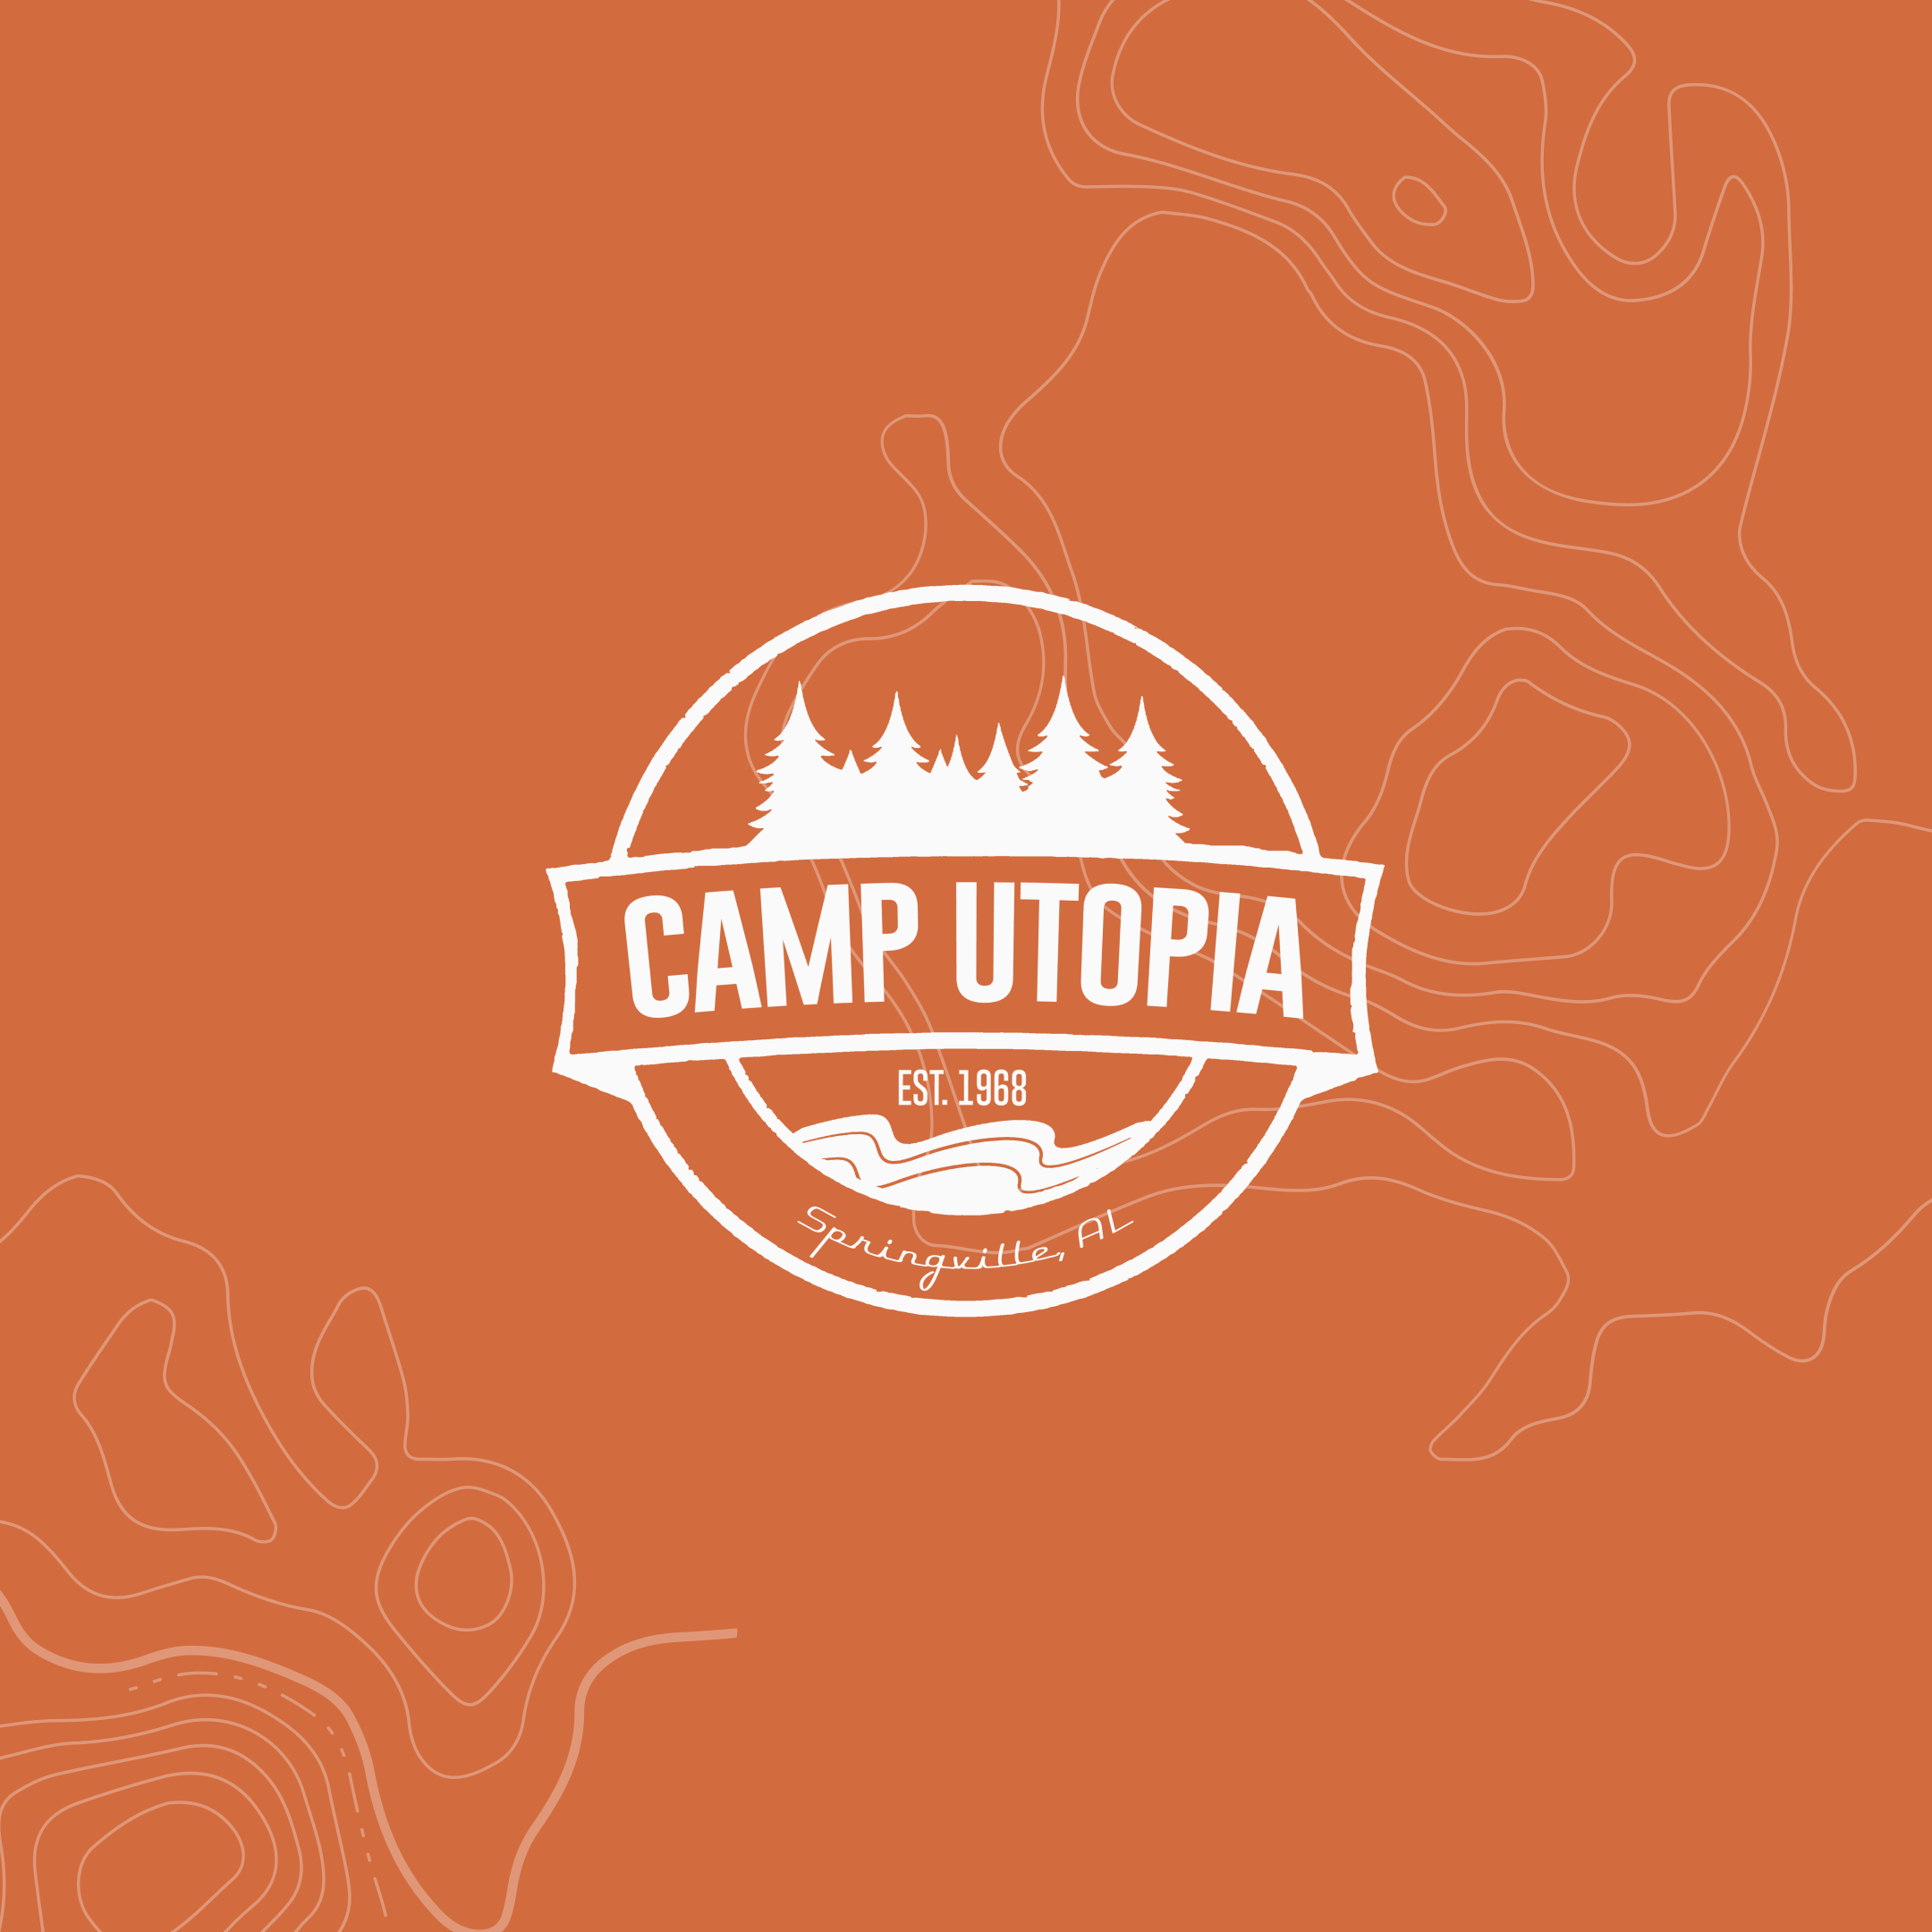 CAMP UTOPIA